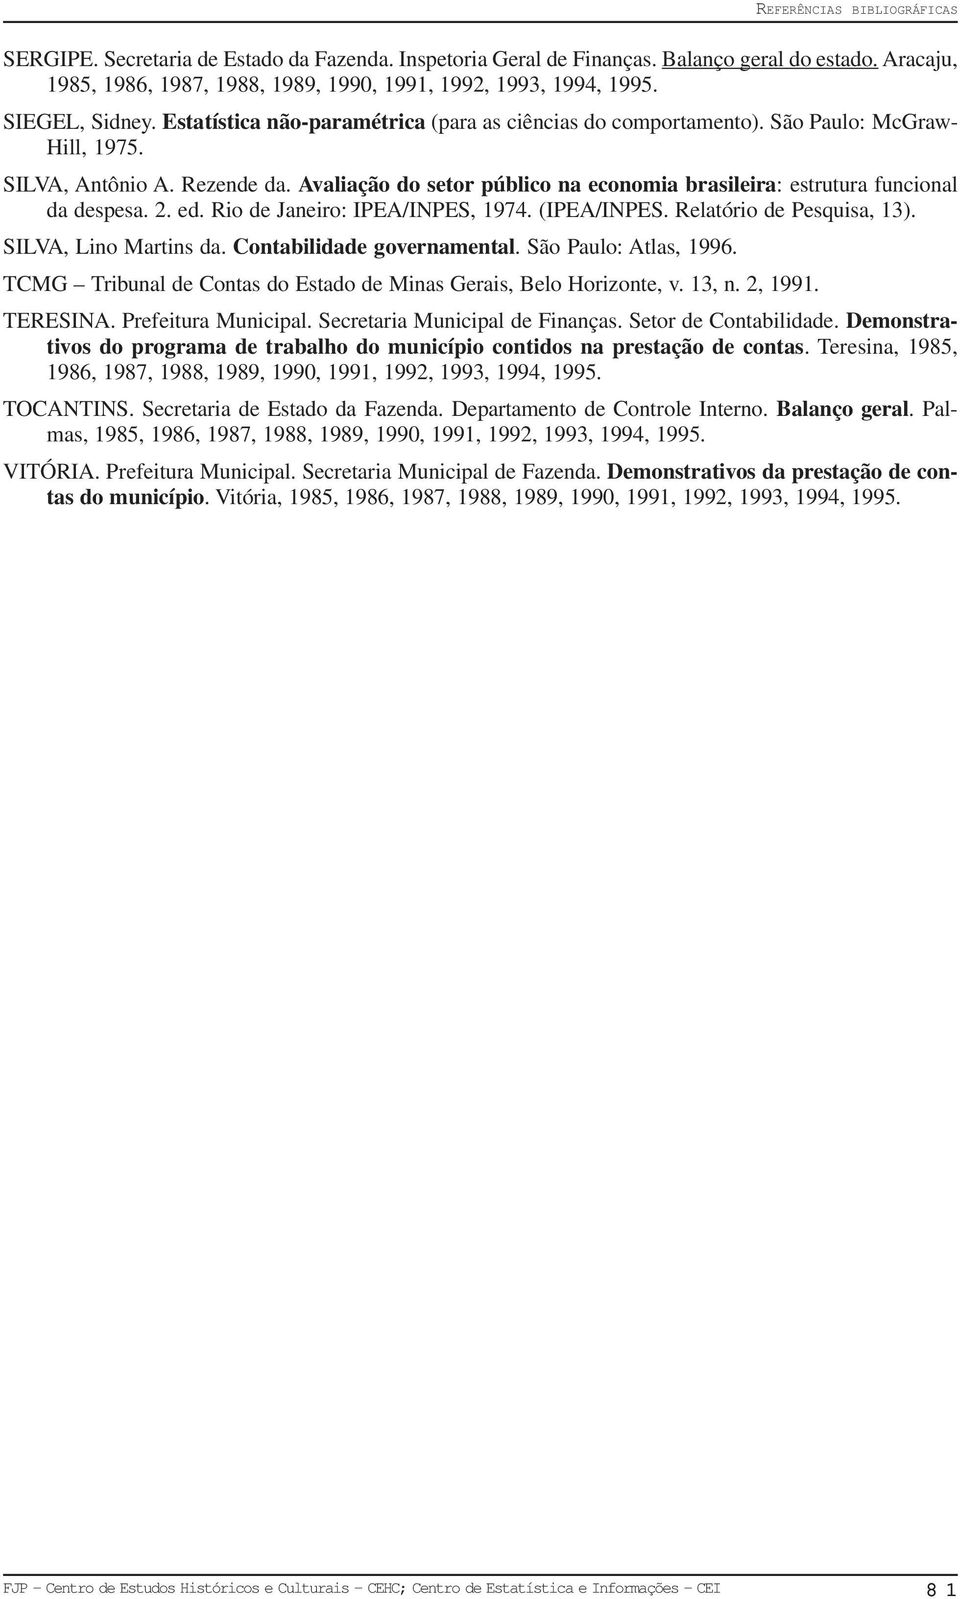 Avaliação do setor público na economia brasileira: estrutura funcional da despesa. 2. ed. Rio de Janeiro: IPEA/INPES, 1974. (IPEA/INPES. Relatório de Pesquisa, 13). SILVA, Lino Martins da.